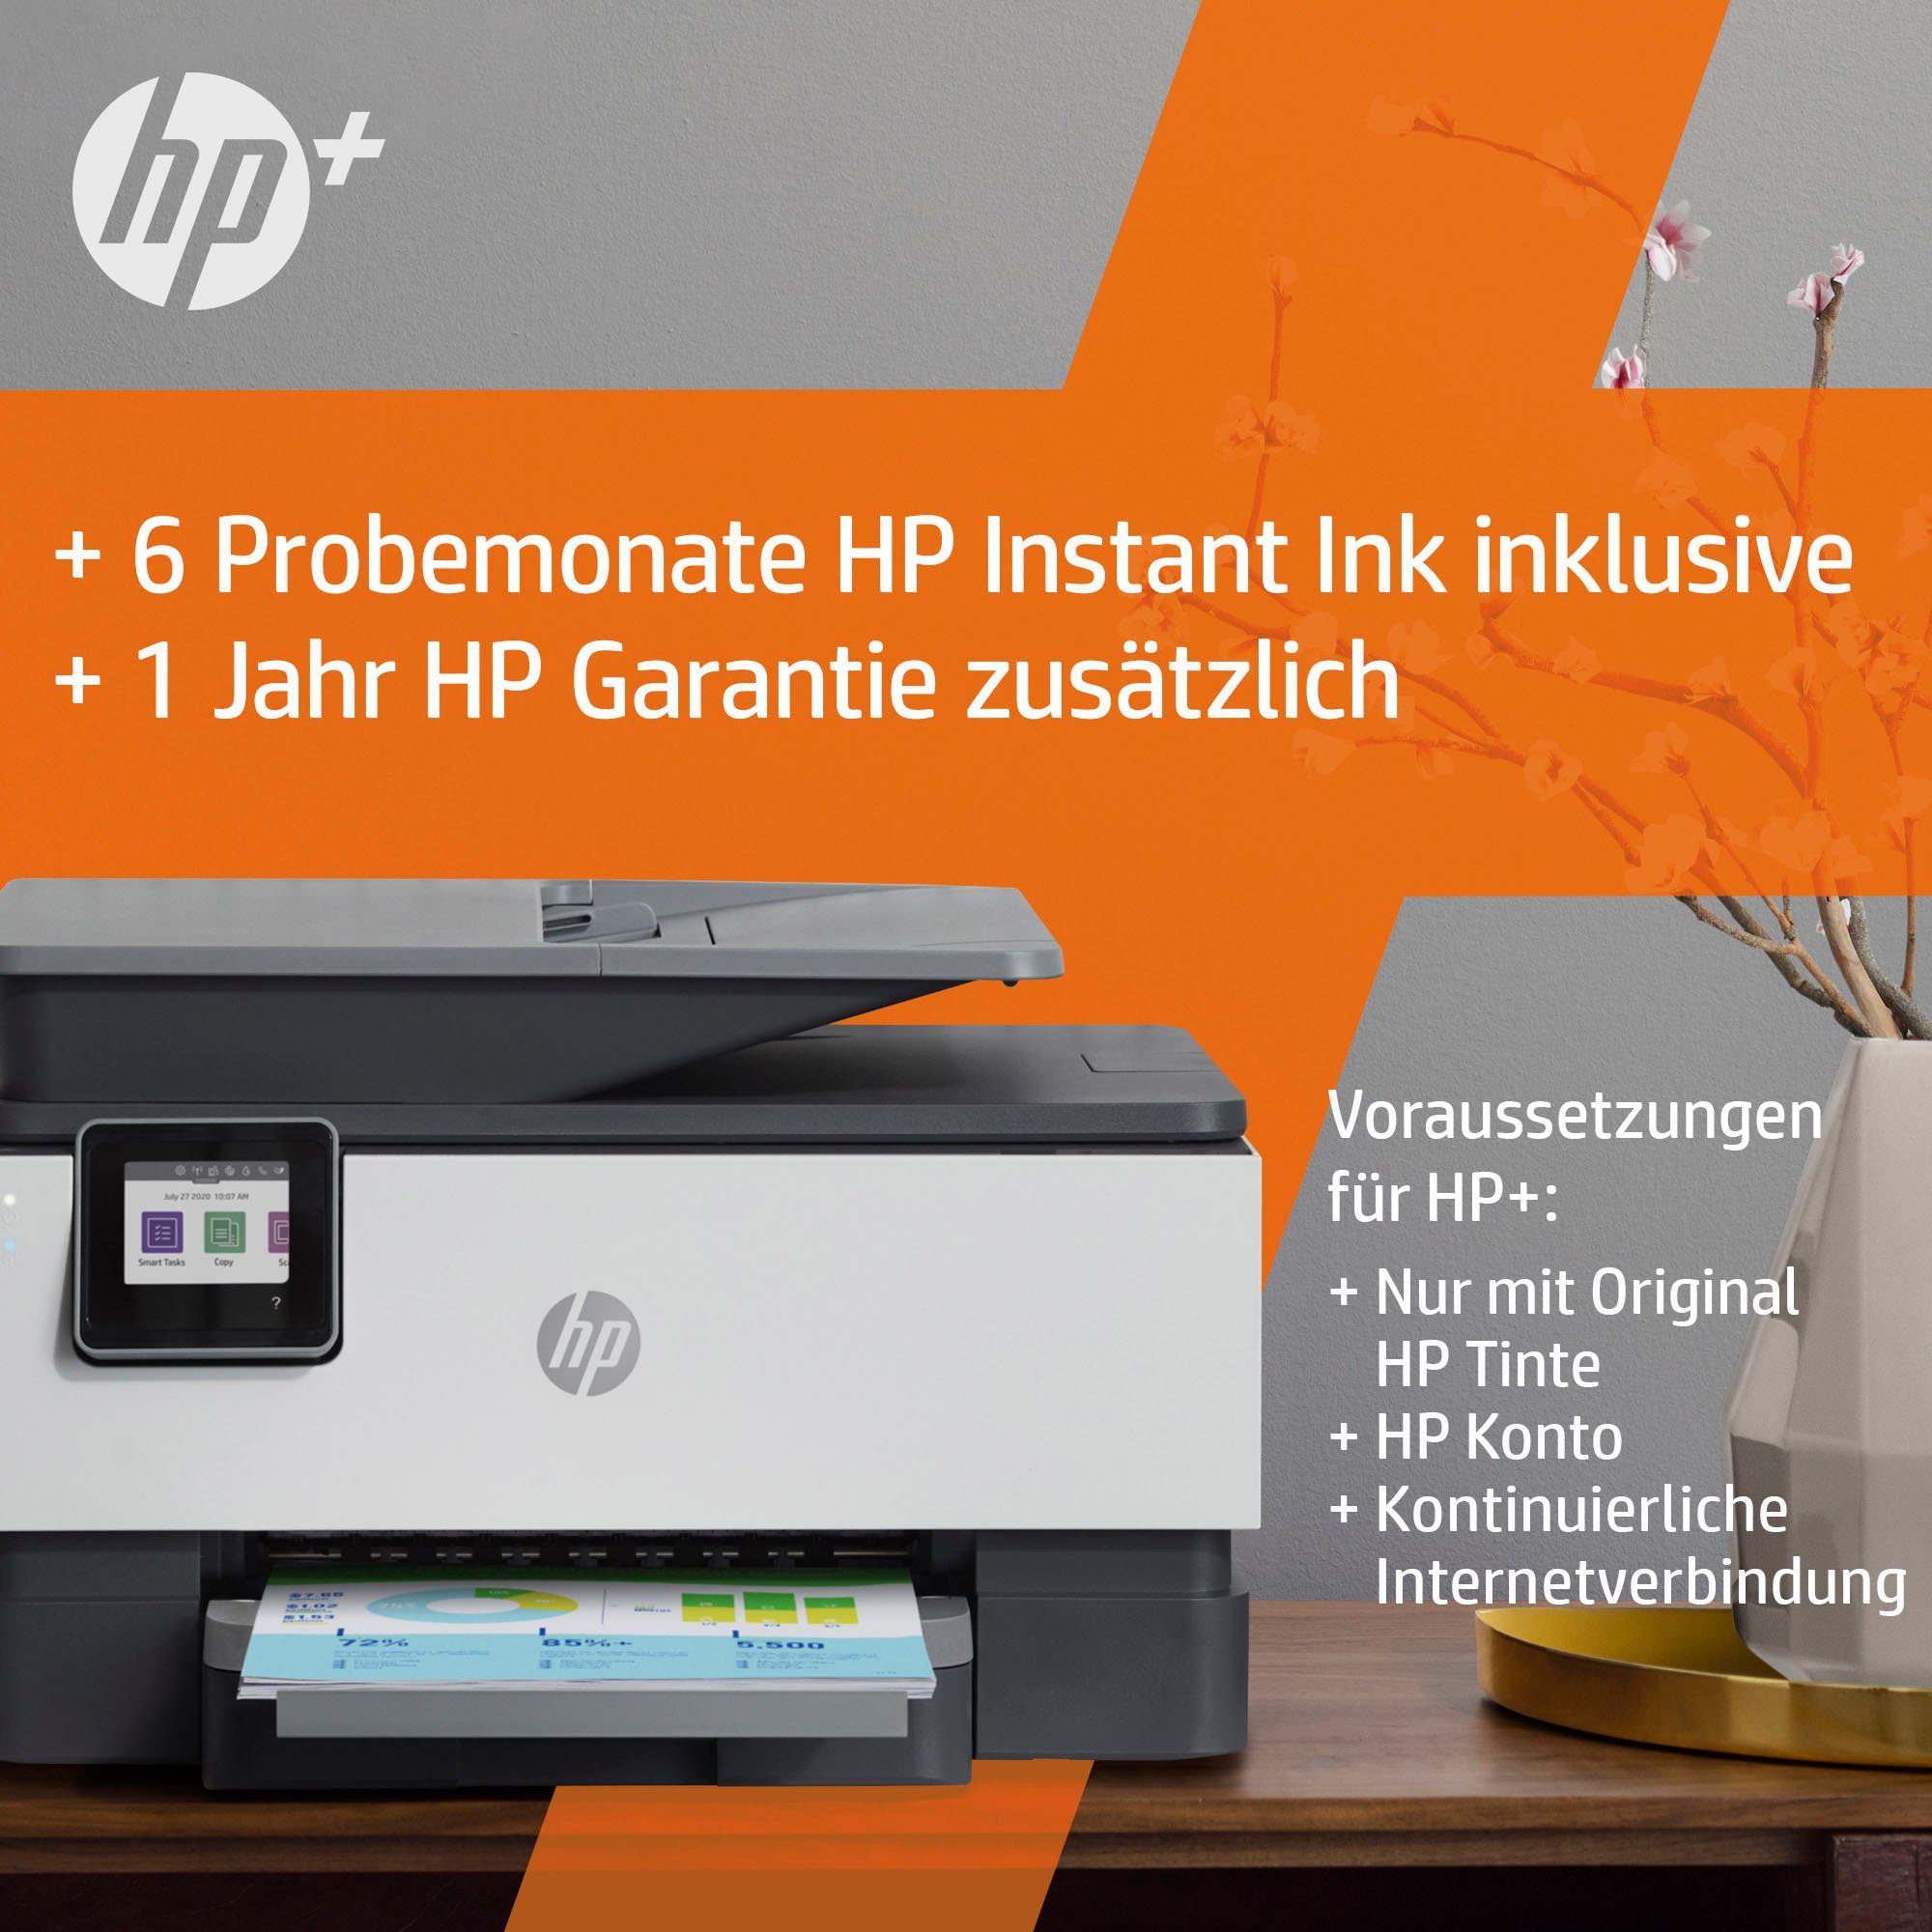 HP+ HP Instant (LAN color Ink (Ethernet), (Wi-Fi), kompatibel) AiO OfficeJet Multifunktionsdrucker, WLAN 9012e Pro A4